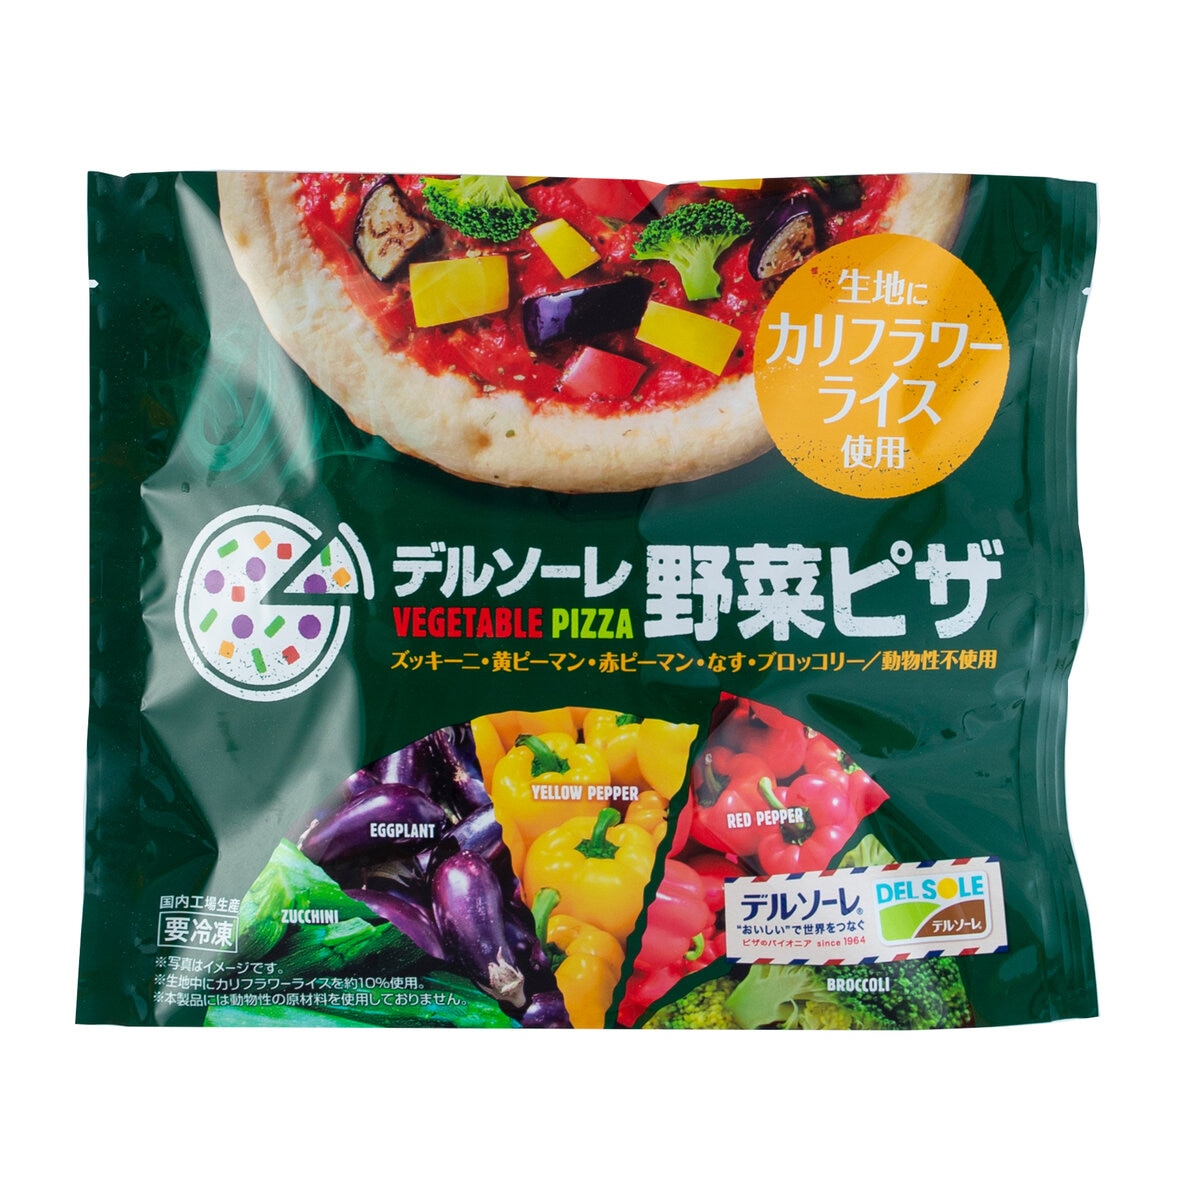 【冷凍】デルソーレ 野菜ピザ 15枚セット